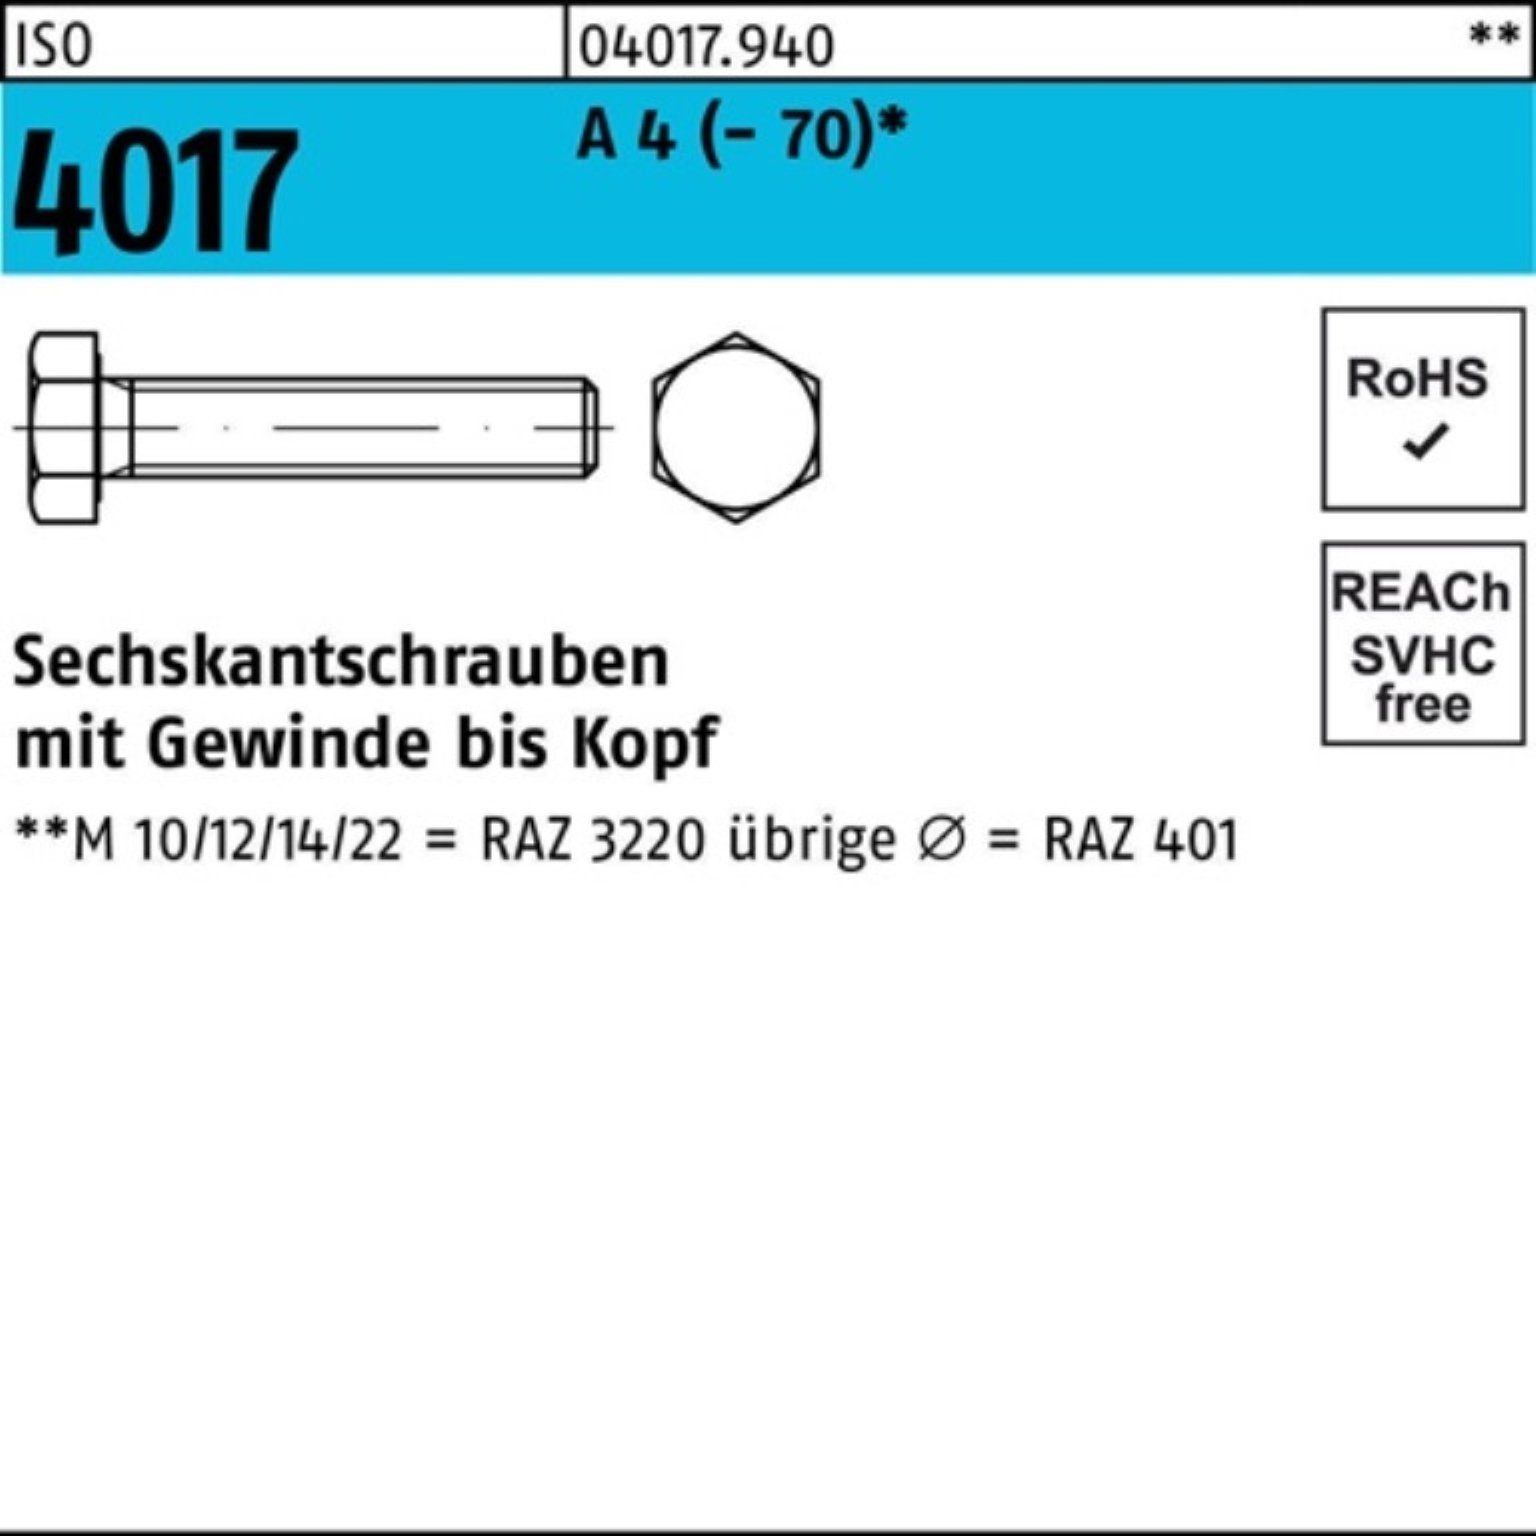 Bufab Sechskantschraube 100er Pack Sechskantschraube ISO 4017 VG M10x 16 A 4 (70) 100 Stück